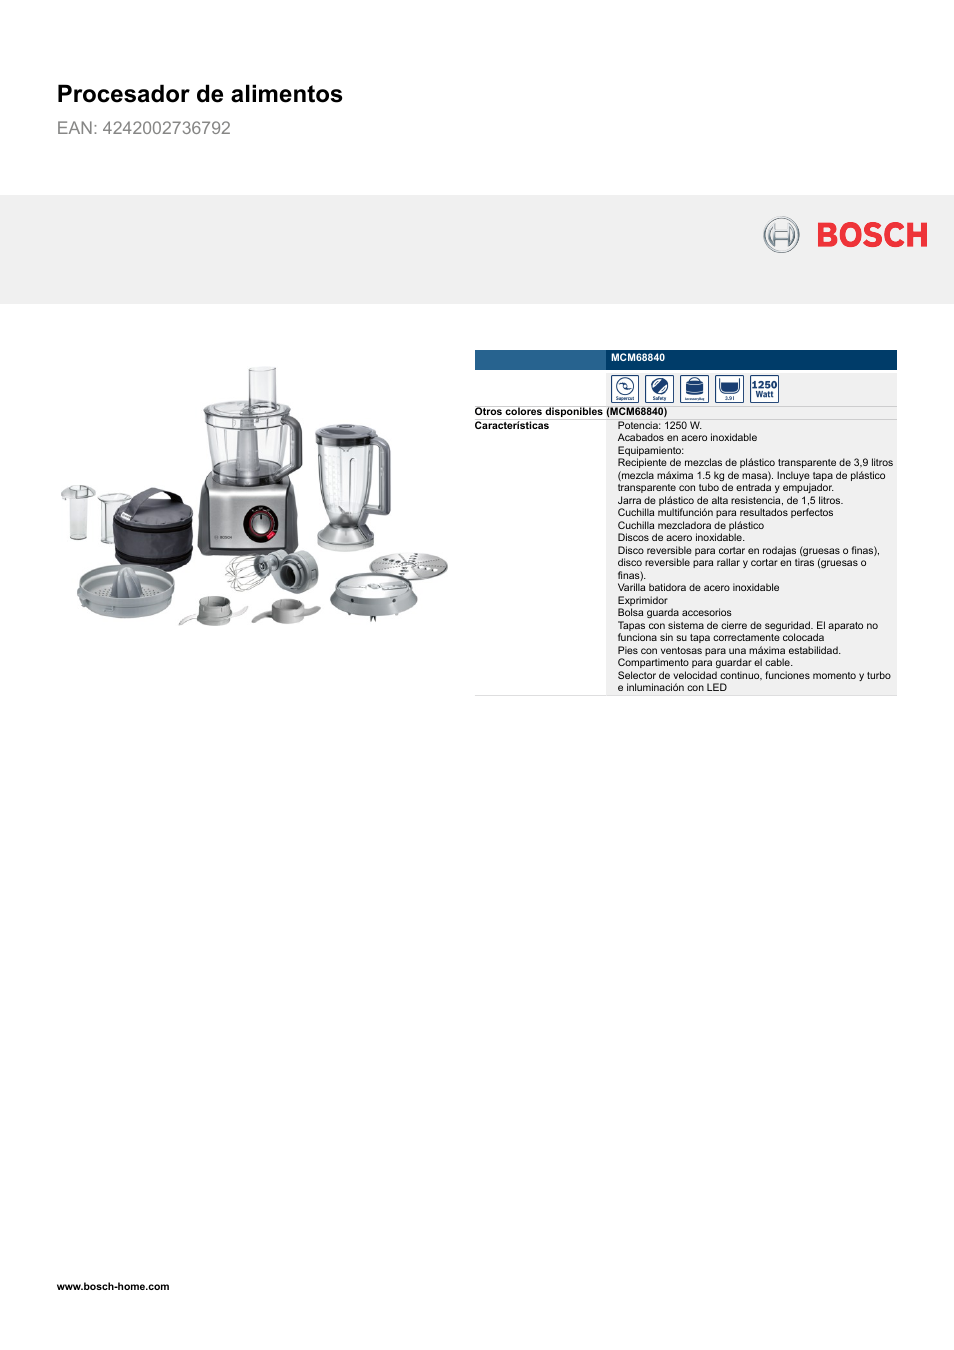 Bosch MCM68840 Procesador de alimentos EAN 4242002736792 Manual del usuario | Páginas: 2